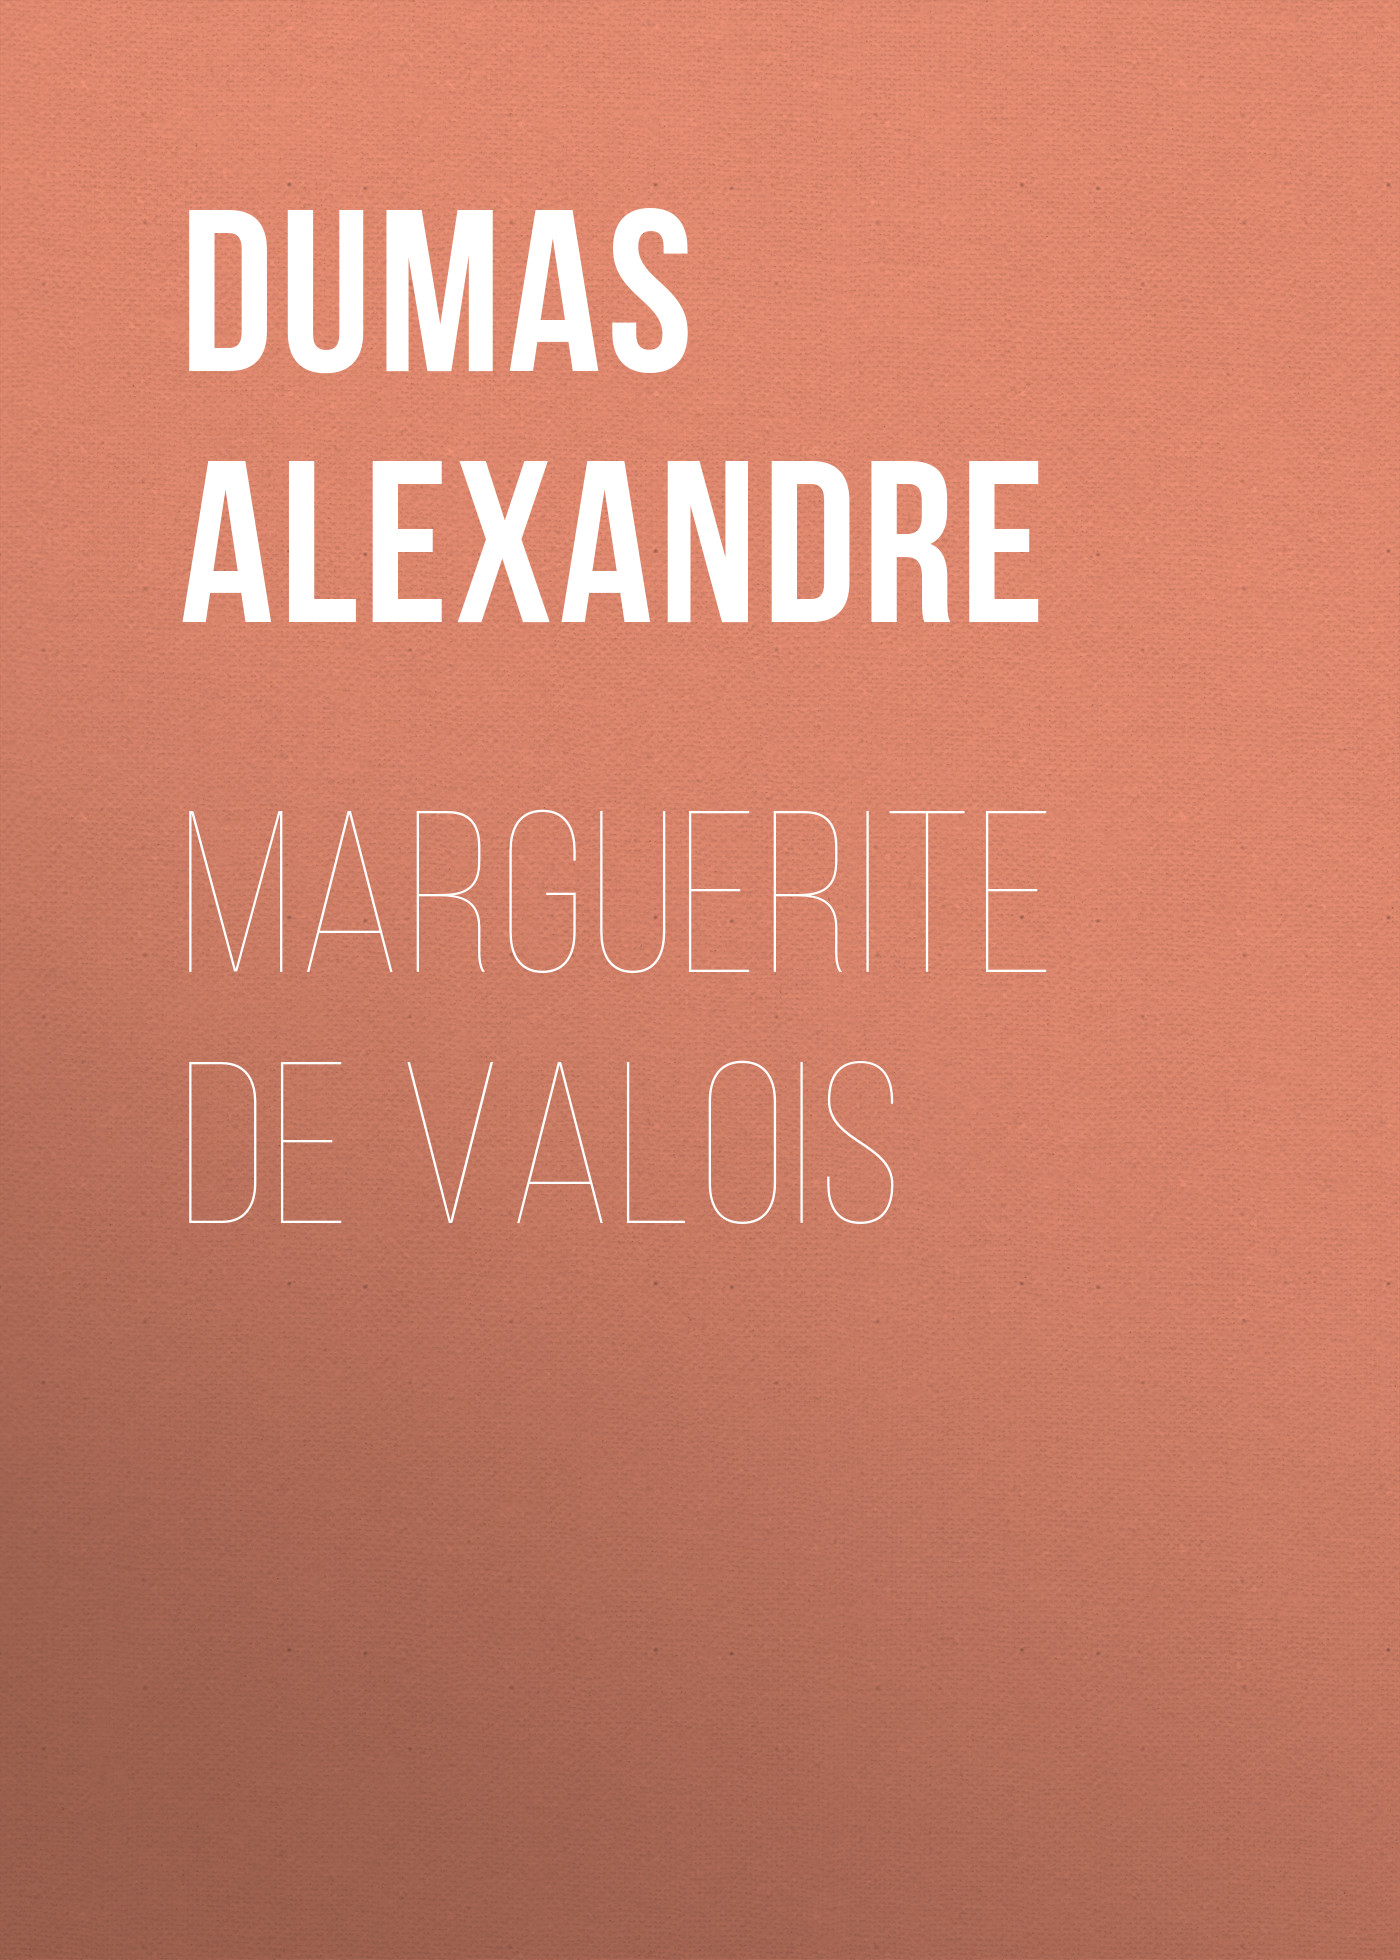 Книга Marguerite de Valois из серии , созданная Alexandre Dumas, может относится к жанру Зарубежная старинная литература, Зарубежная классика, Историческая литература. Стоимость электронной книги Marguerite de Valois с идентификатором 24620677 составляет 0 руб.